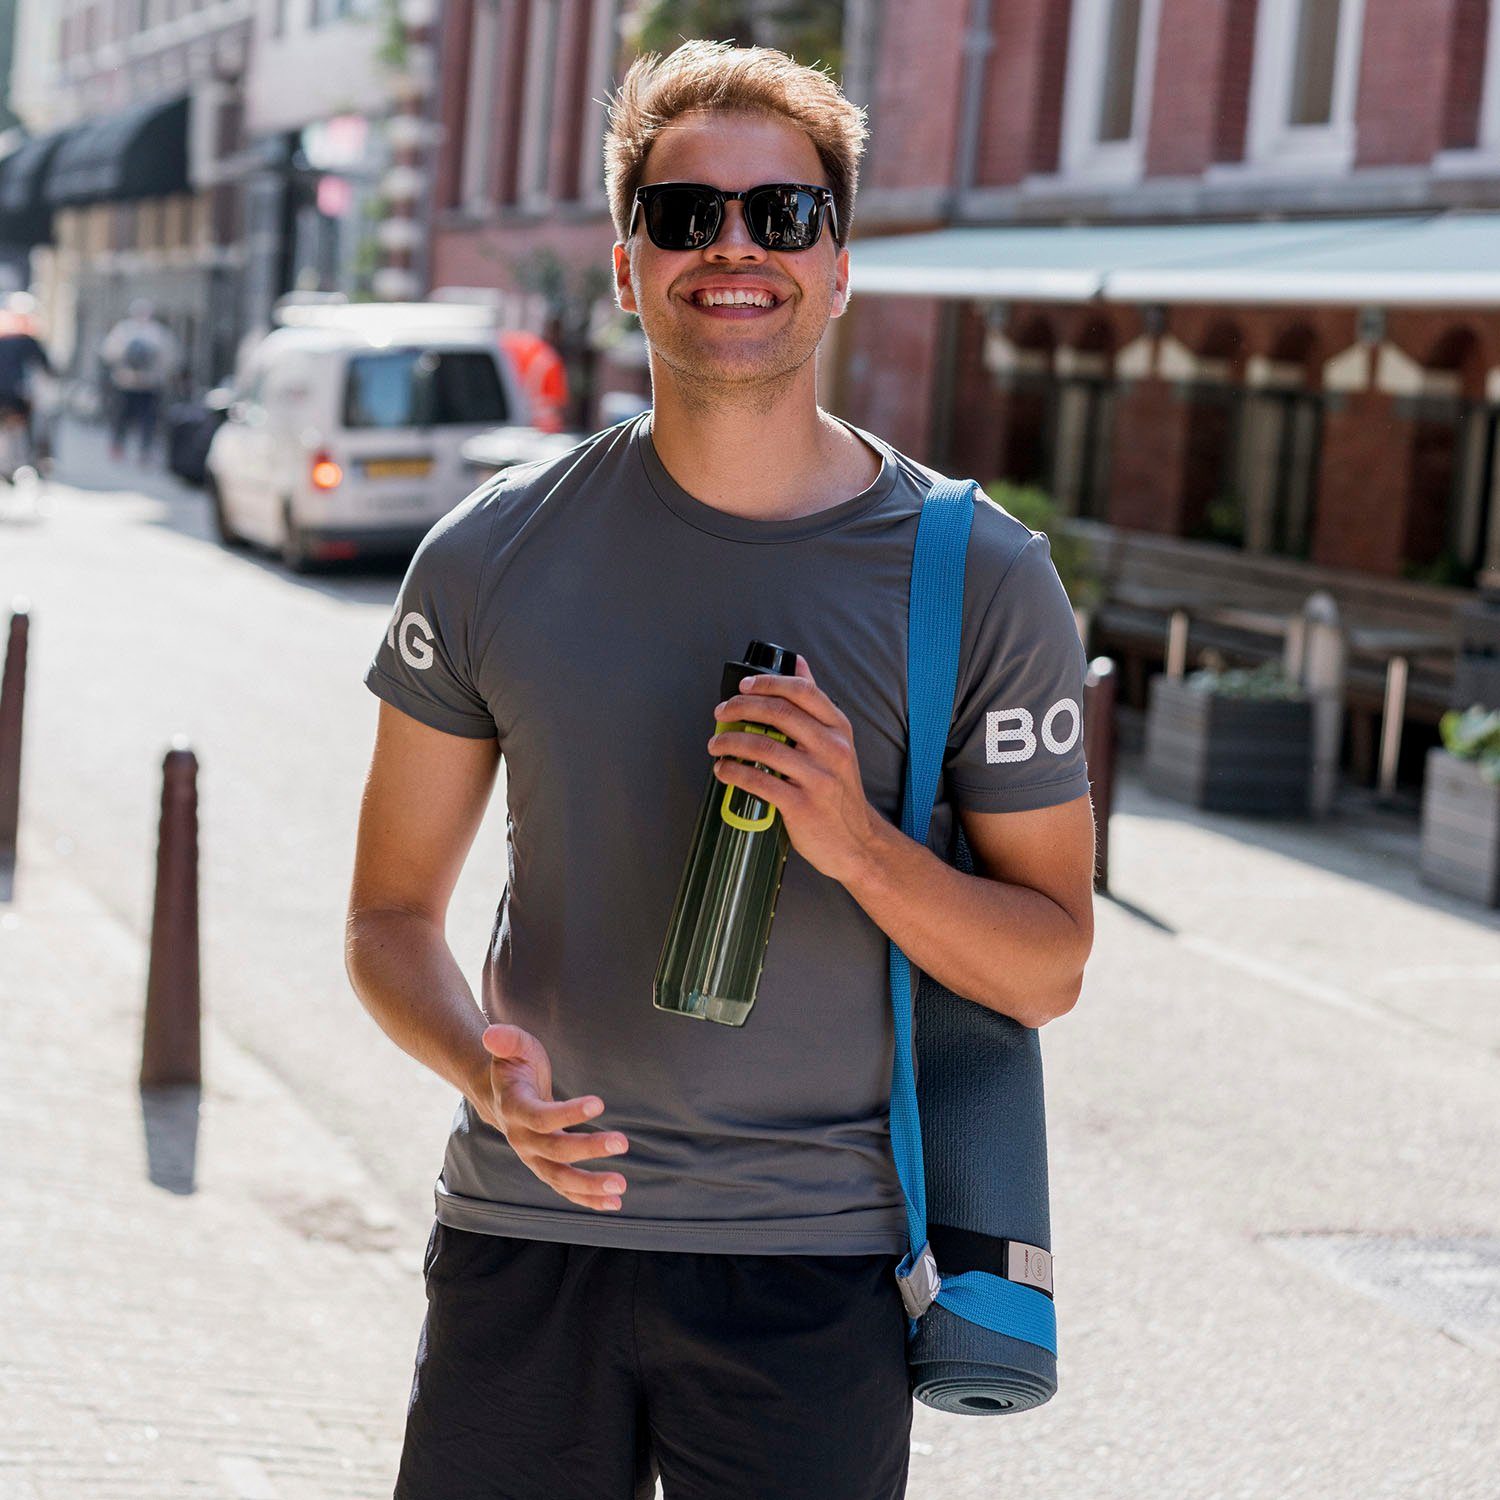 auslaufsicher, grün Liter Trinkflasche Tracker, aladdin 0,8 Kunststoff, Sports